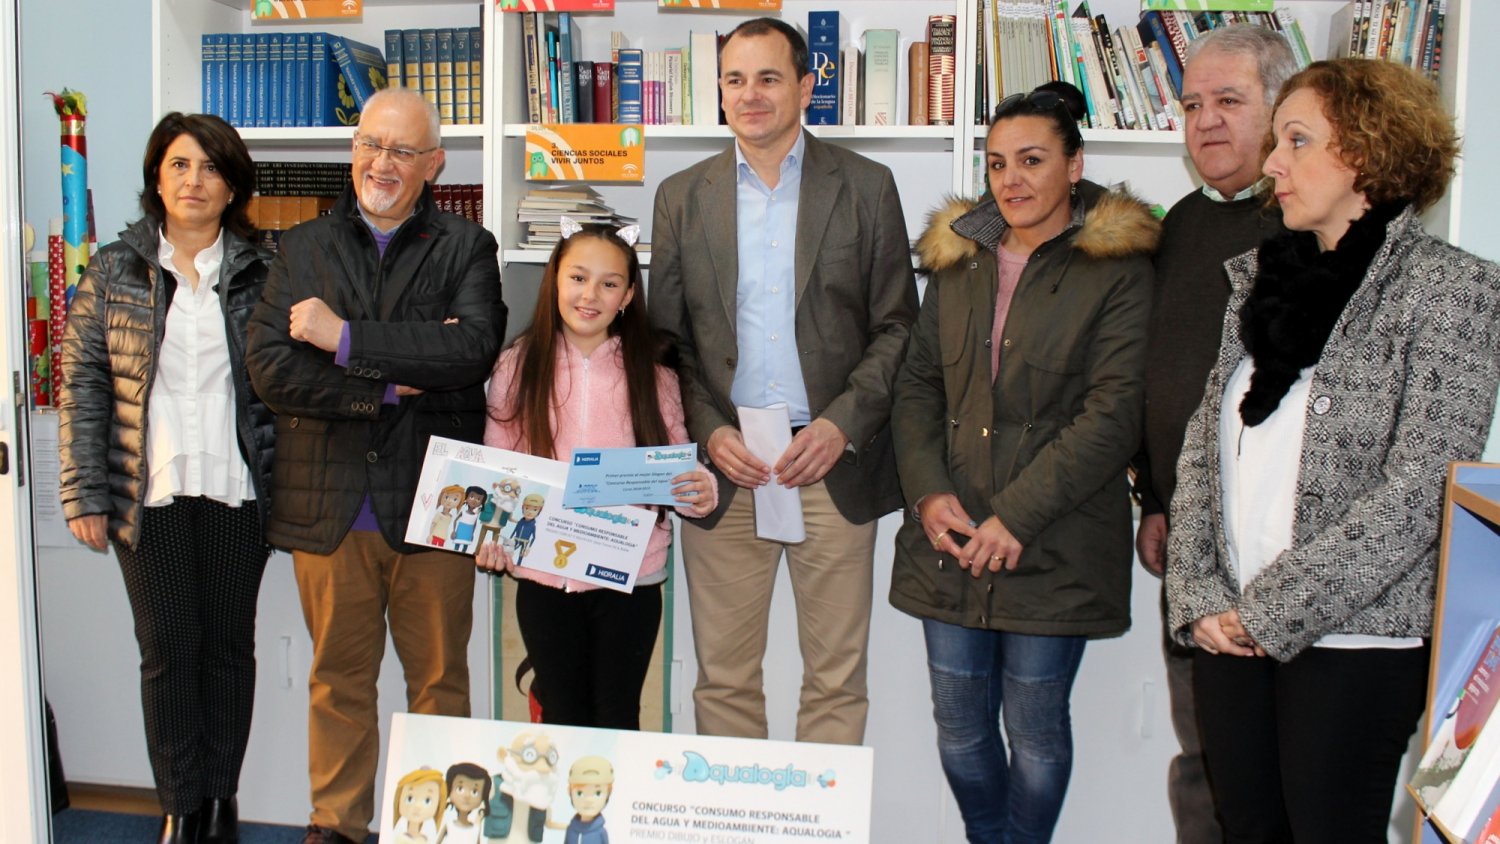 Estepona e Hidralia entregan el premio anual del programa educativo Aqualogía